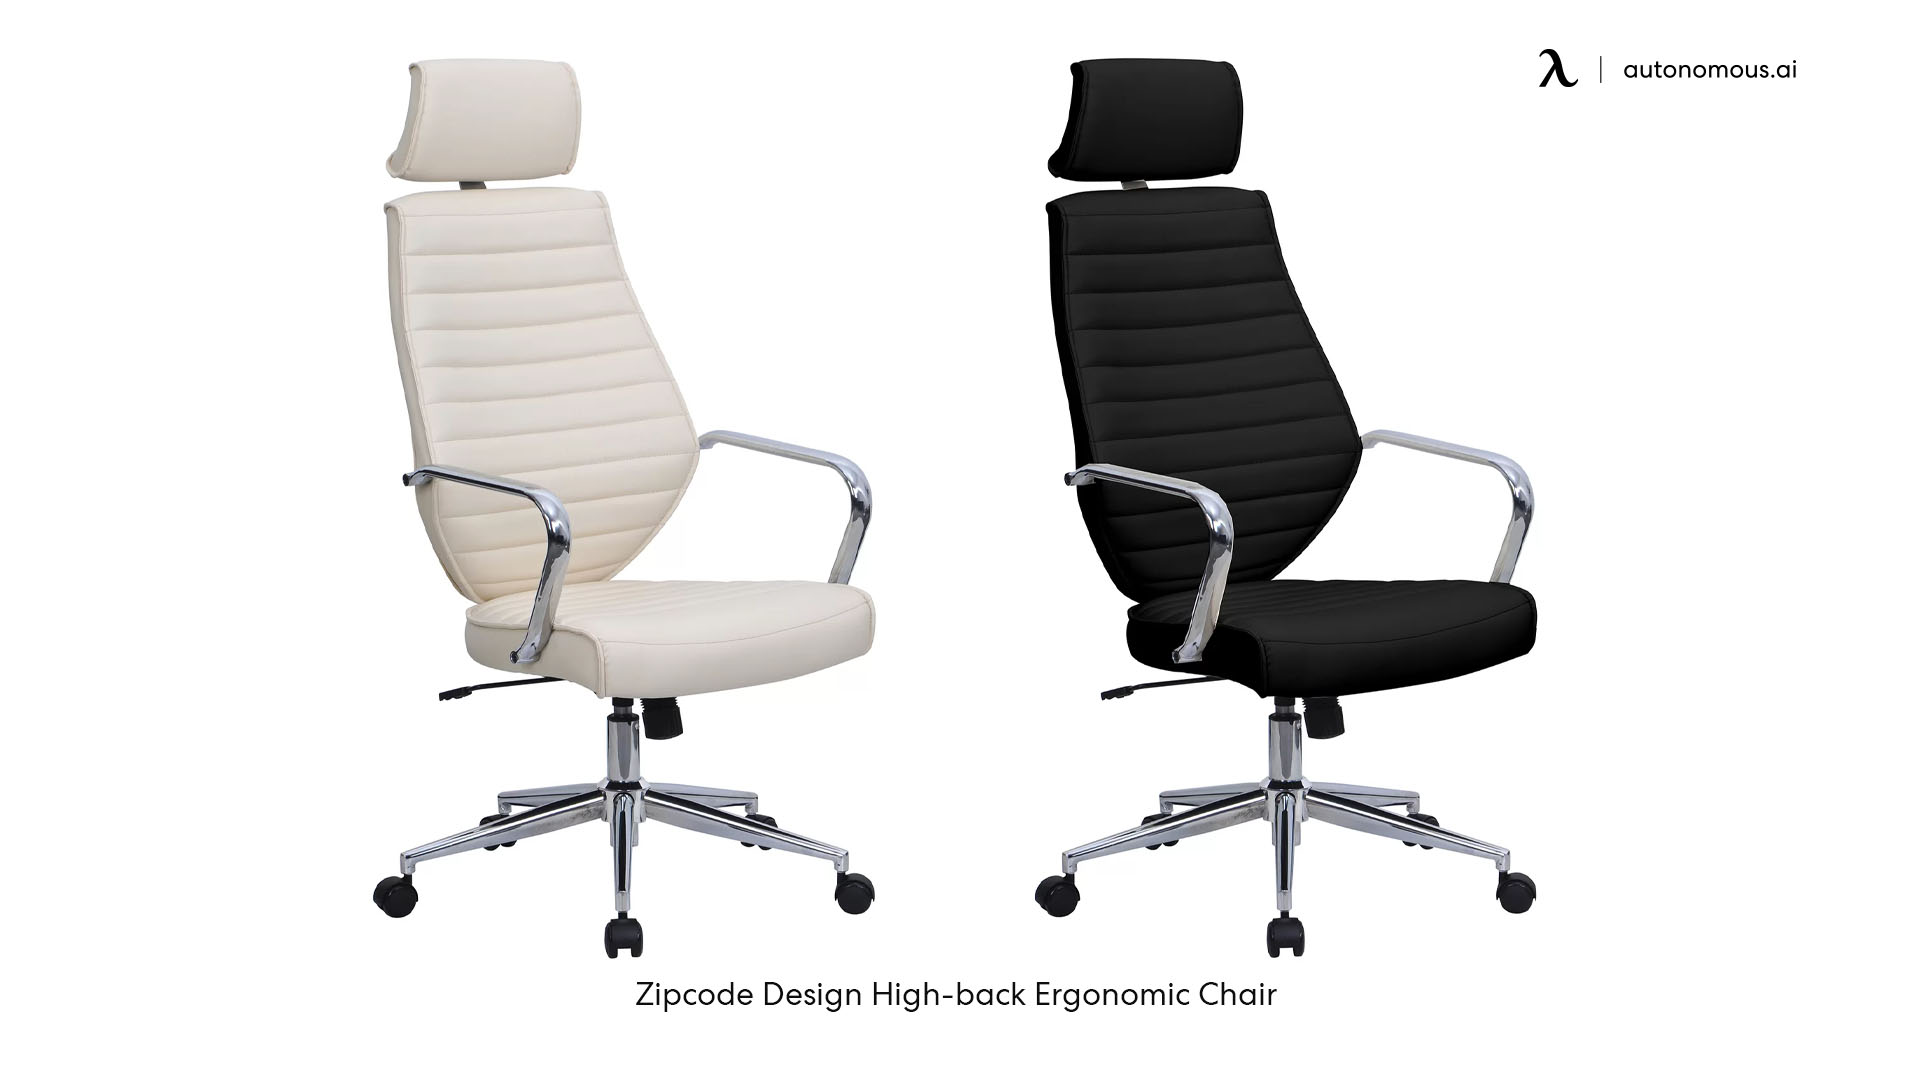 Zipcode Design headrest for office chair